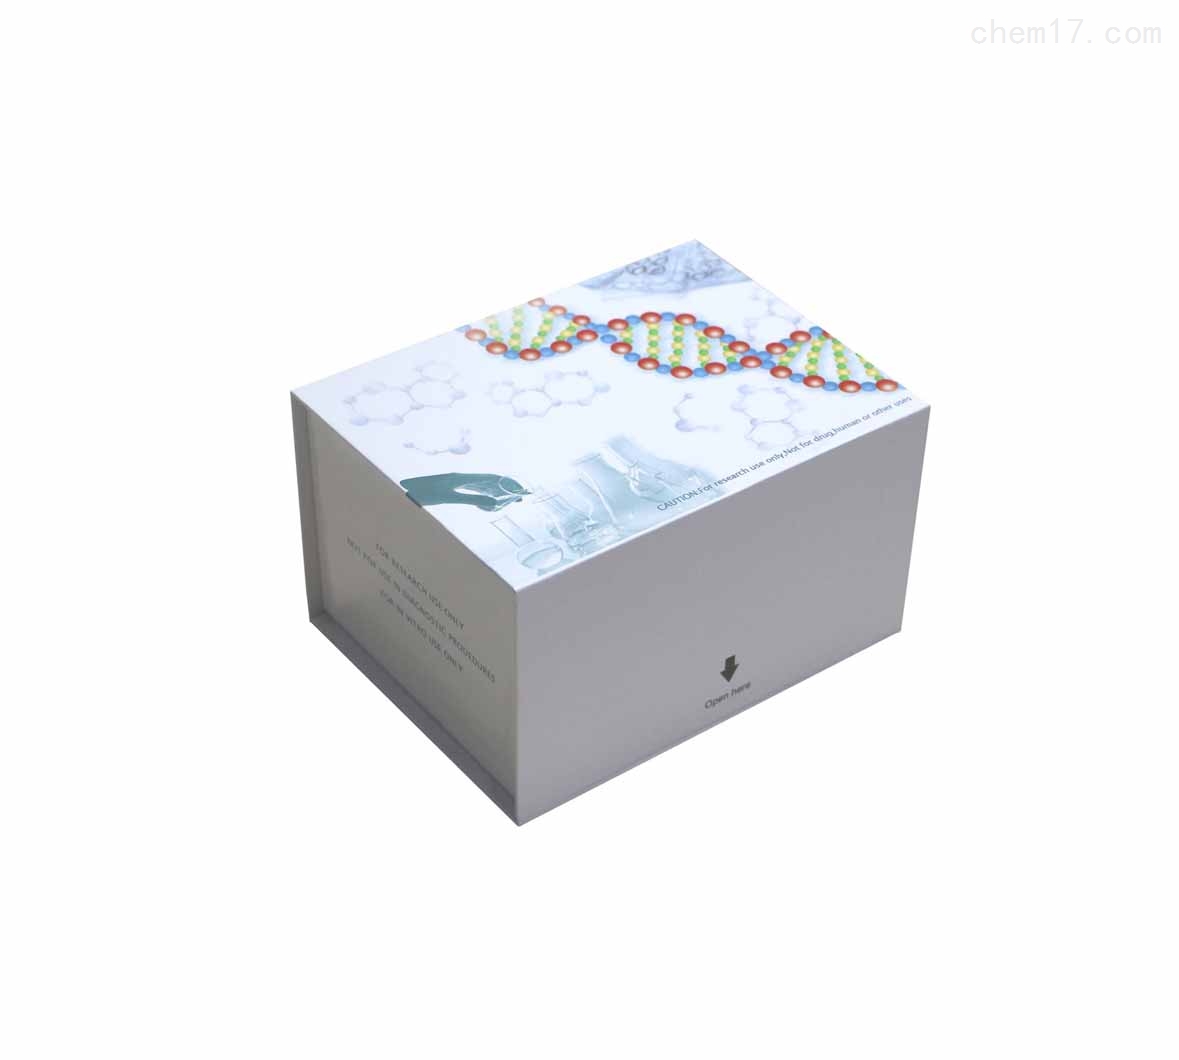 人脱氧尿三磷酸(DUTP)ELISA试剂盒免费待测